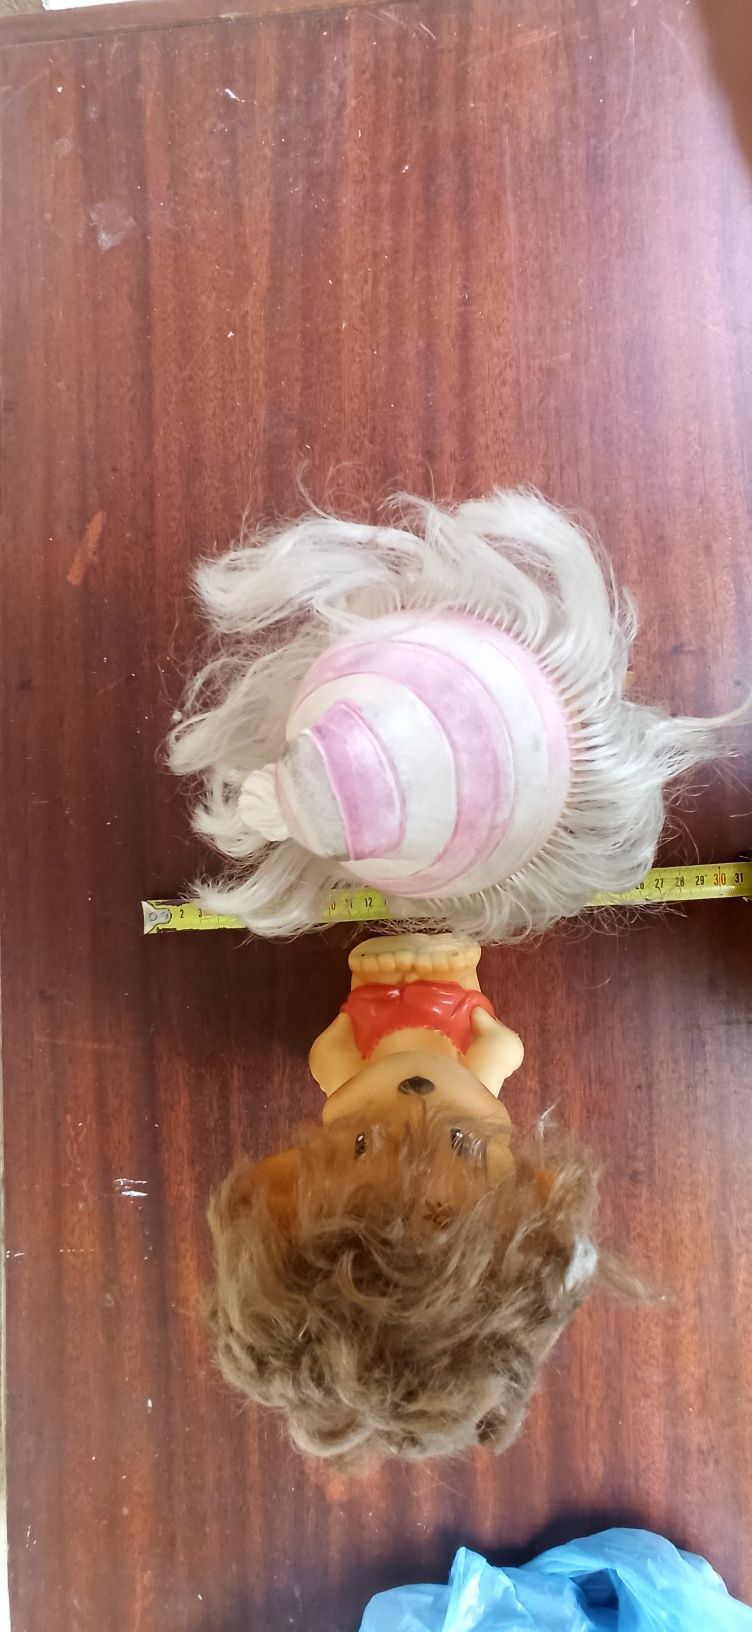 Буратино мартышка обезьянка СССР резиновая игрушка винтаж коллекционер